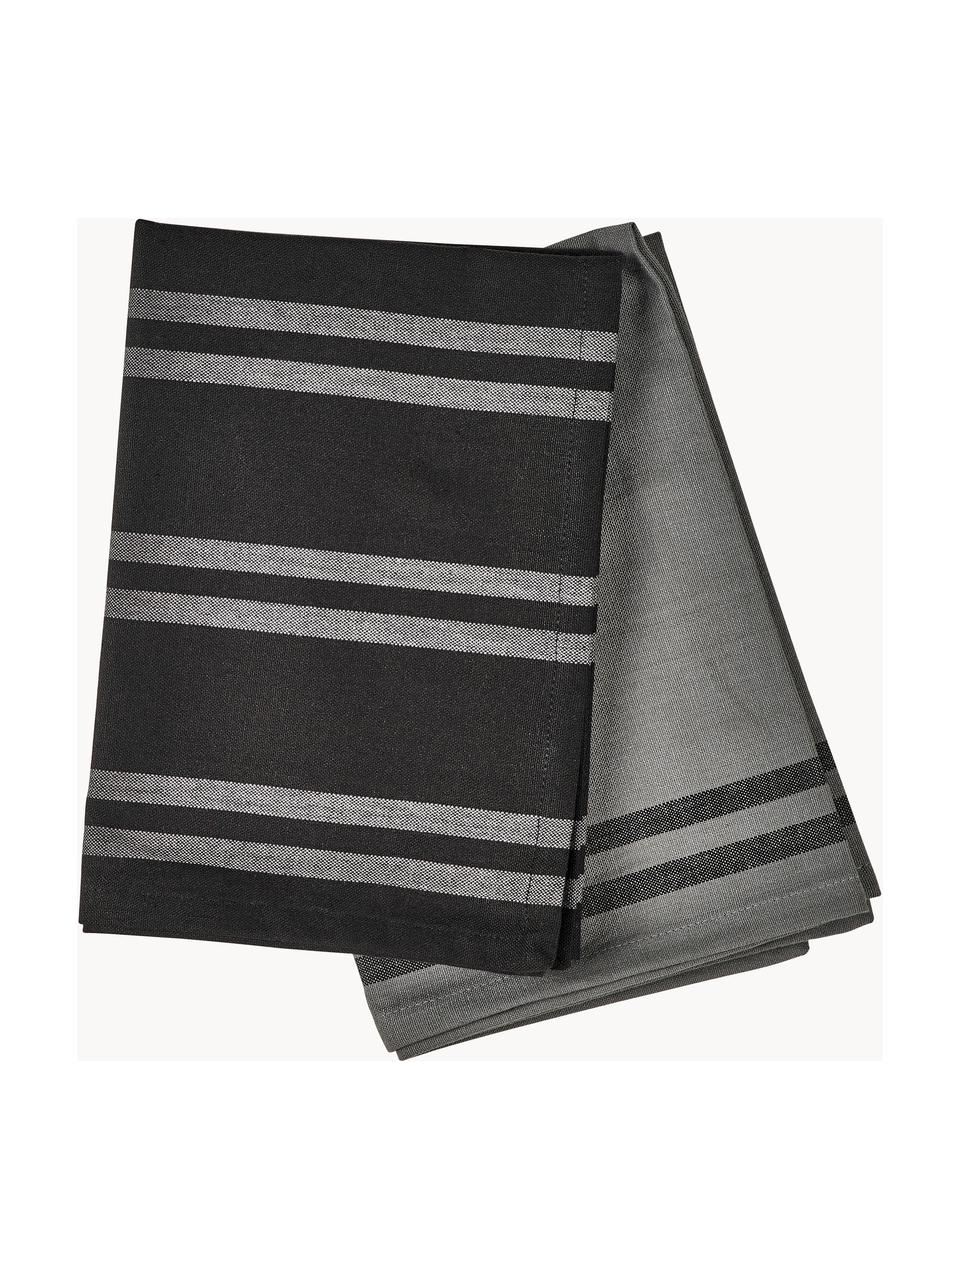 Komplet ręczników kuchennych z bawełny Soft Tools, 2 elem., 100% bawełna, Czarny, szary, S 50 x D 70 cm